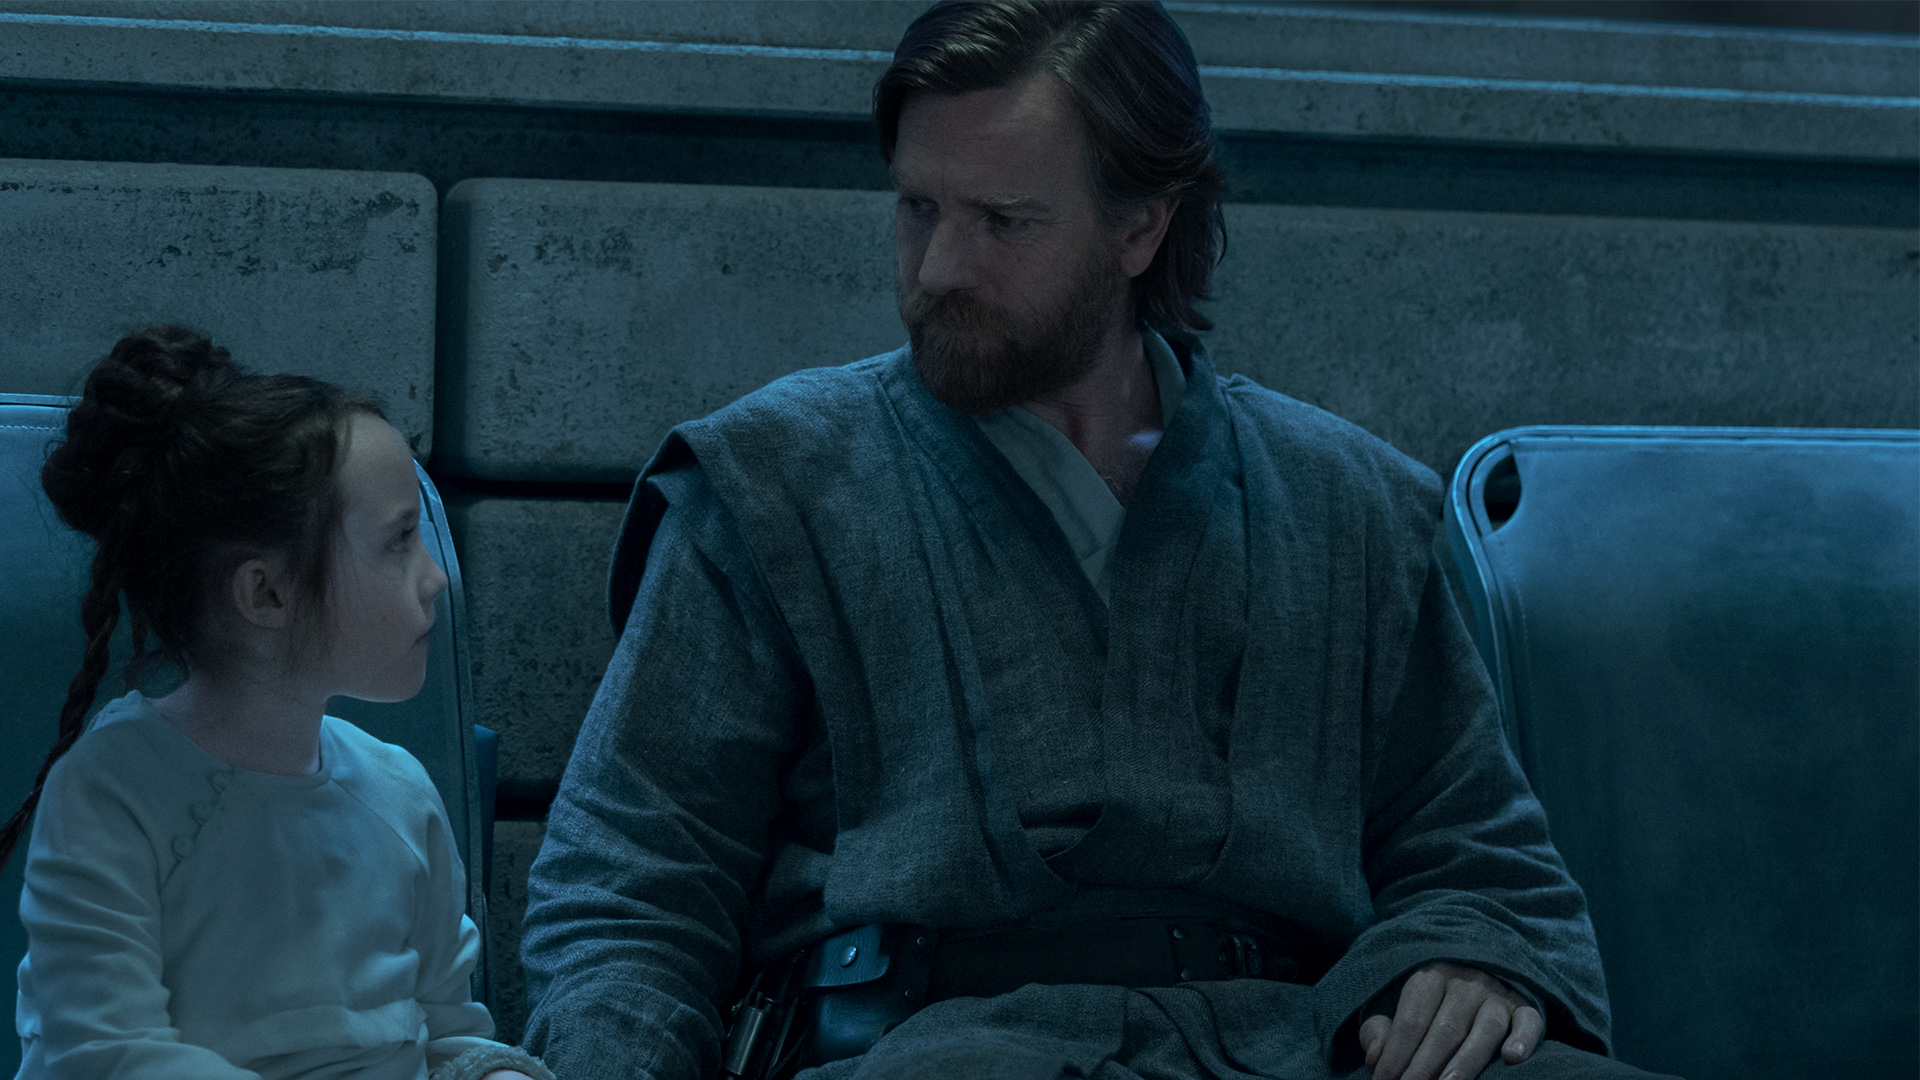 Obi-Wan Kenobi and Princess Leia